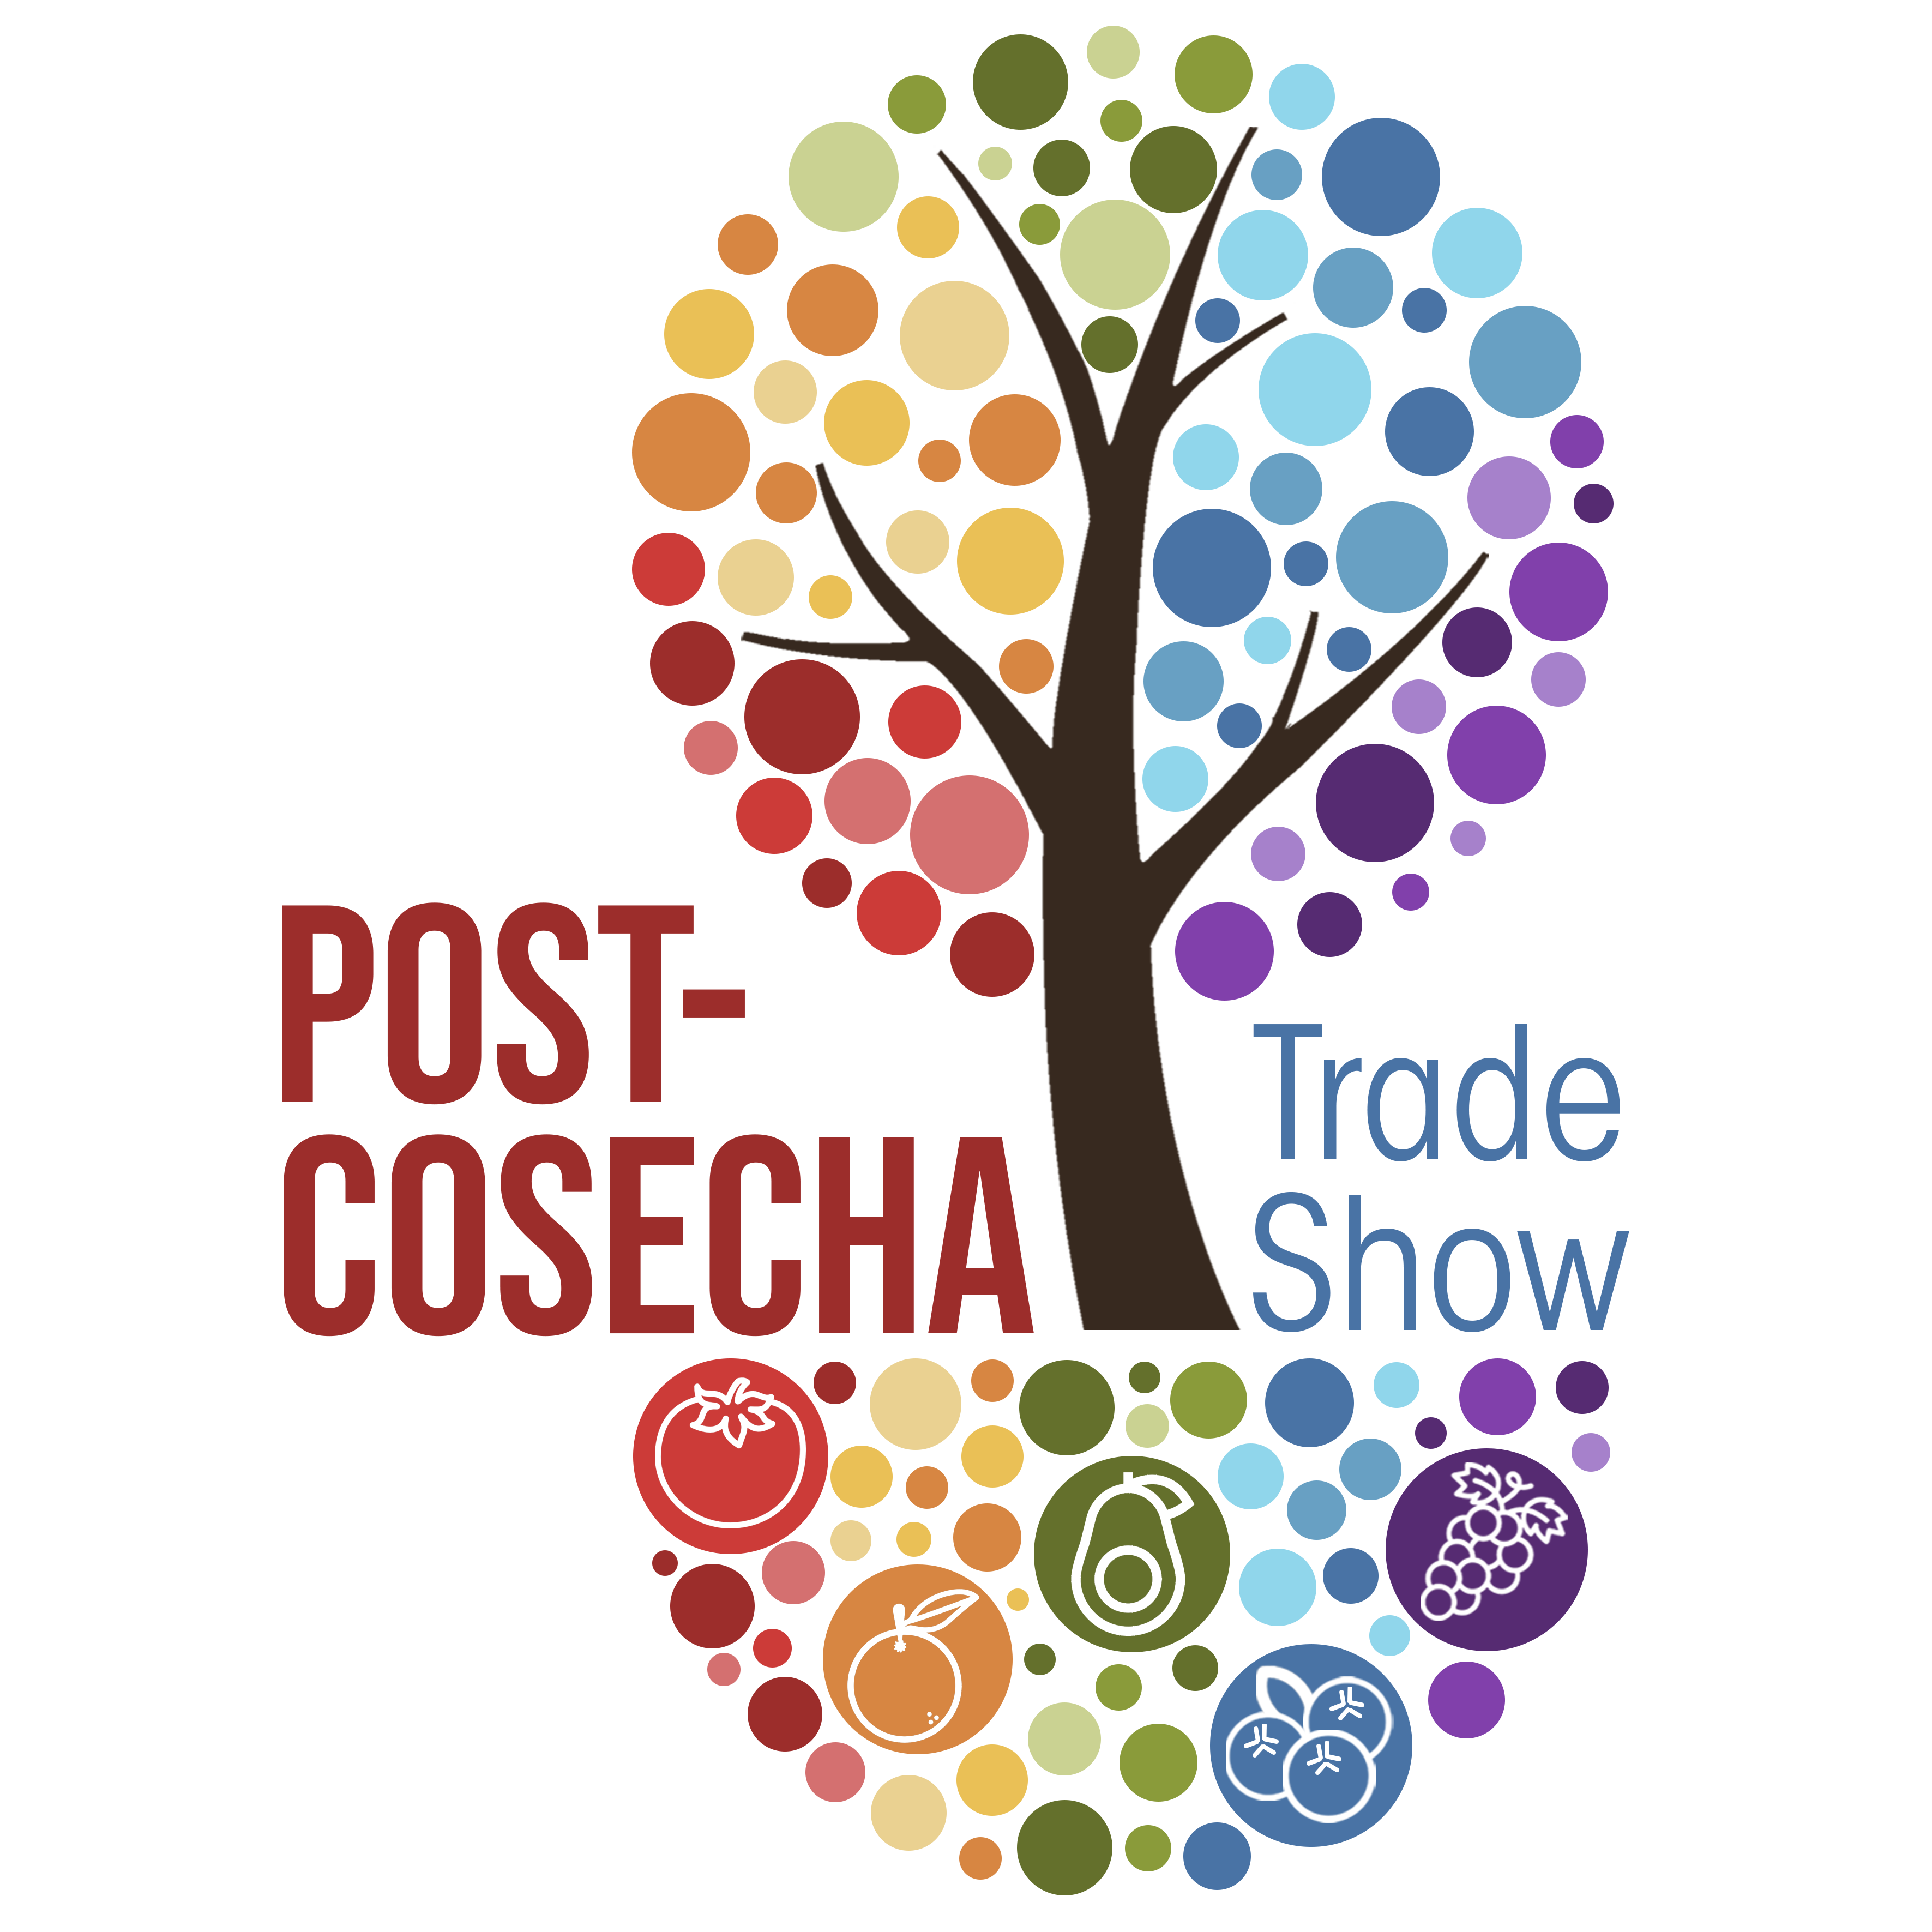 Post-Cosecha. Trade Show